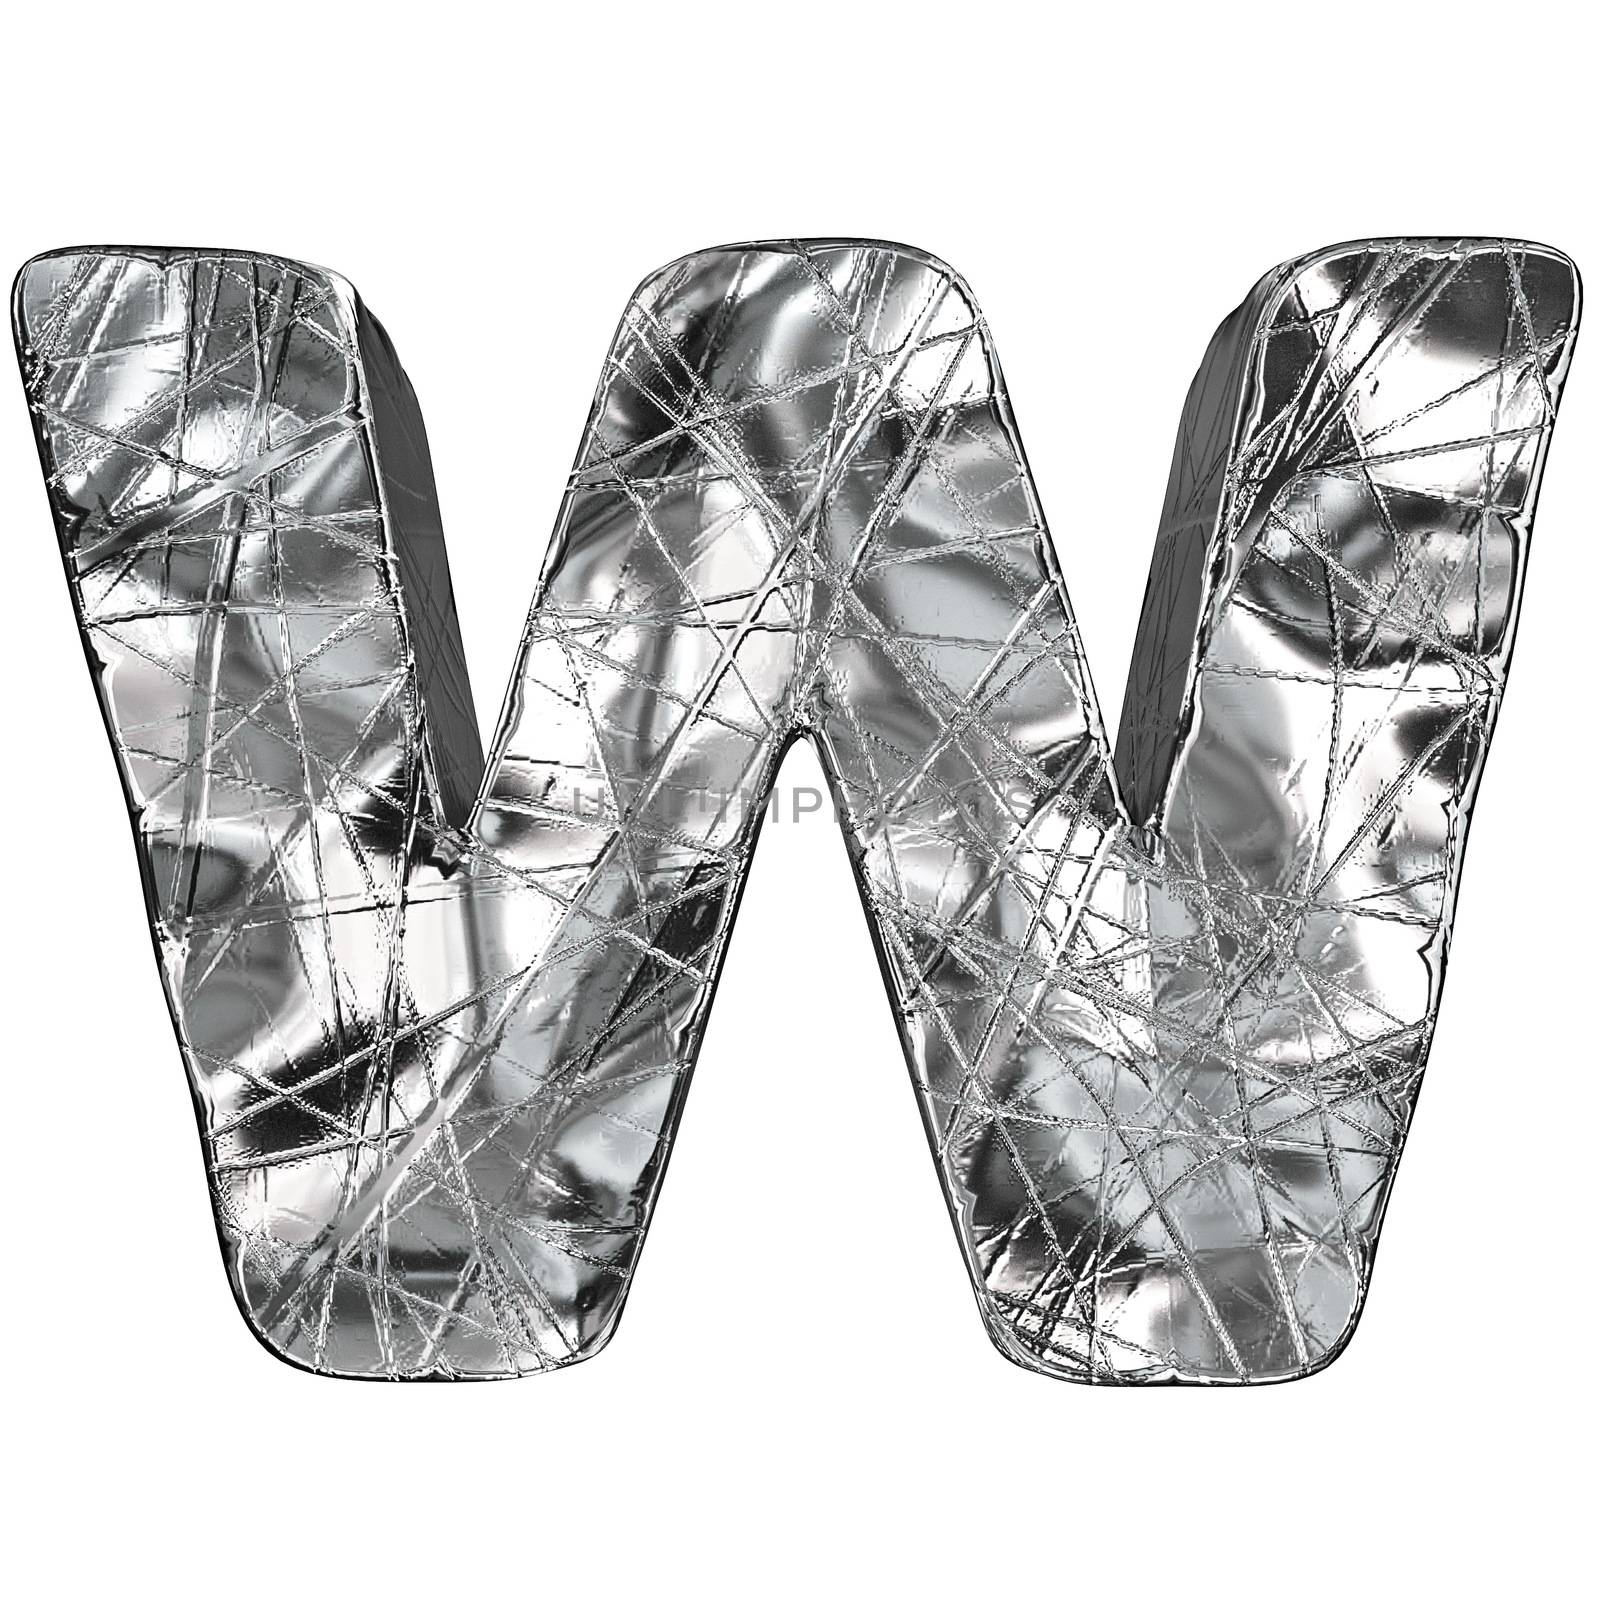 Grunge aluminium foil font letter W 3D render illustration isolated on white background